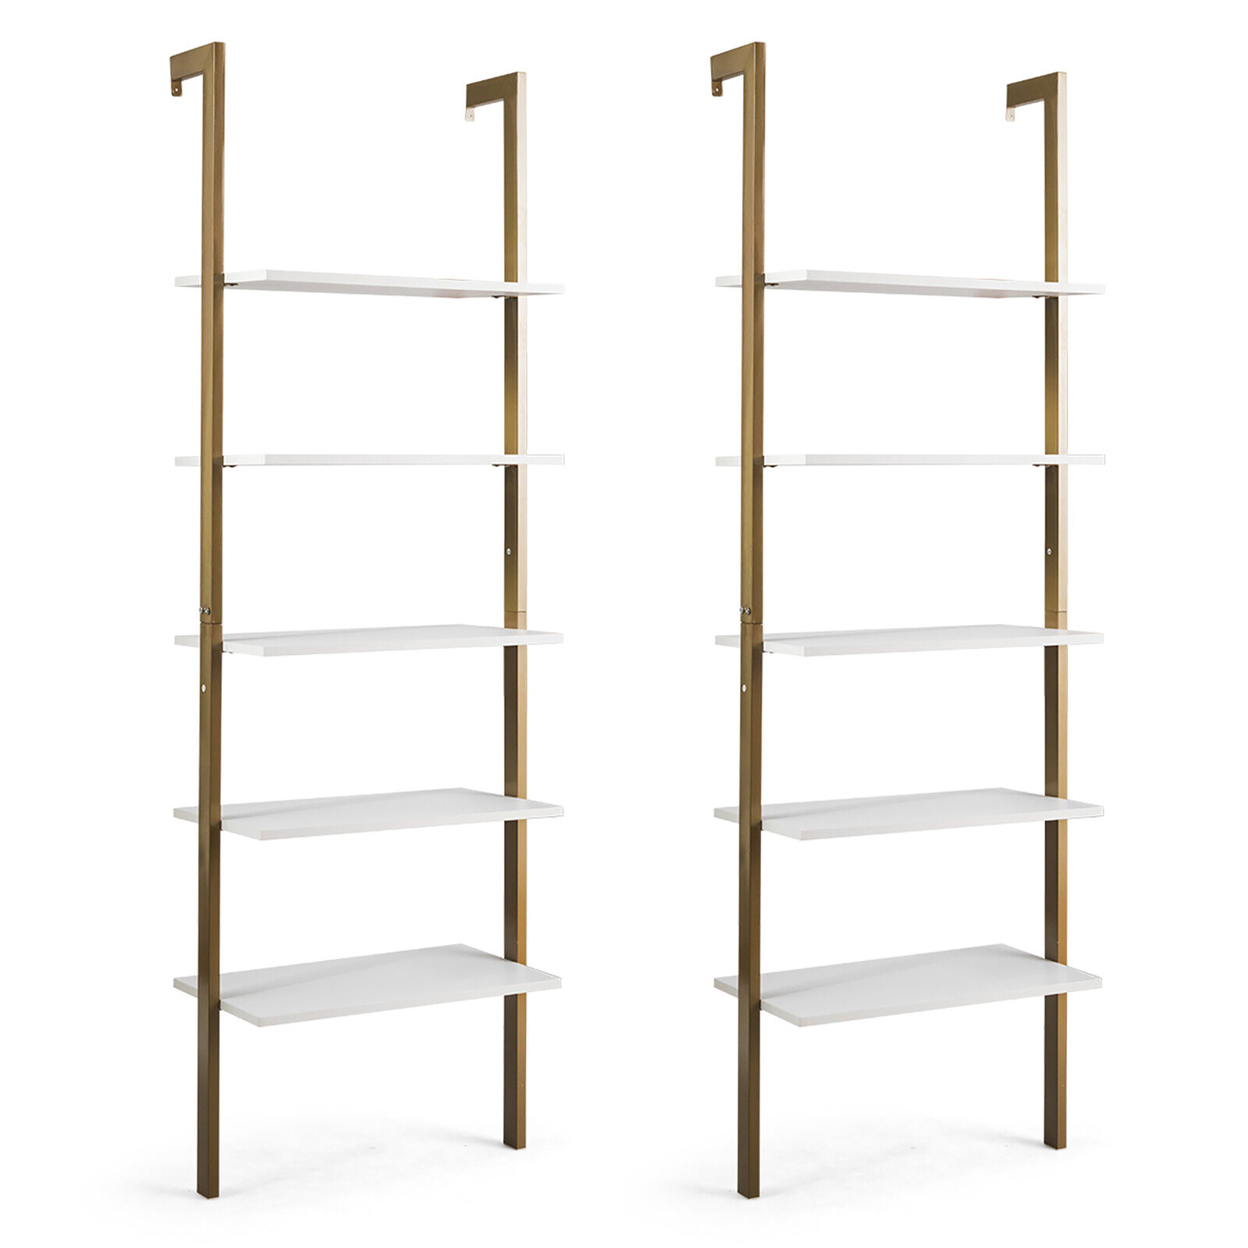 2PCS 5-Tier Ladder Shelf Wood Wall Mounted Display Bookshelf Metal Frame - White, Gold